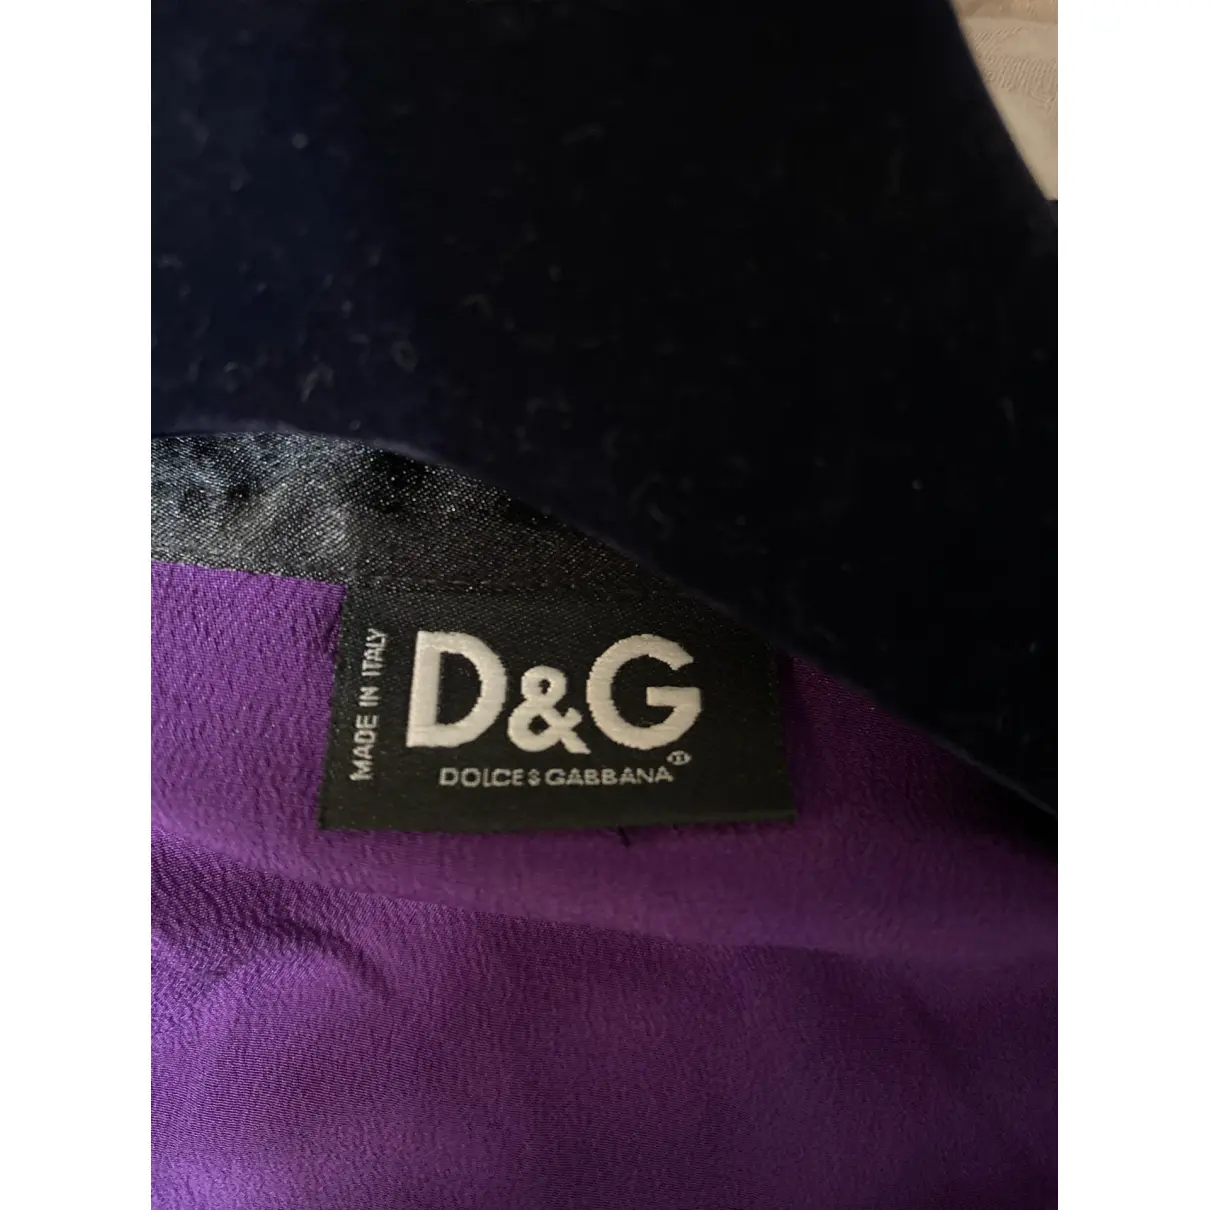 Lace shirt D&G